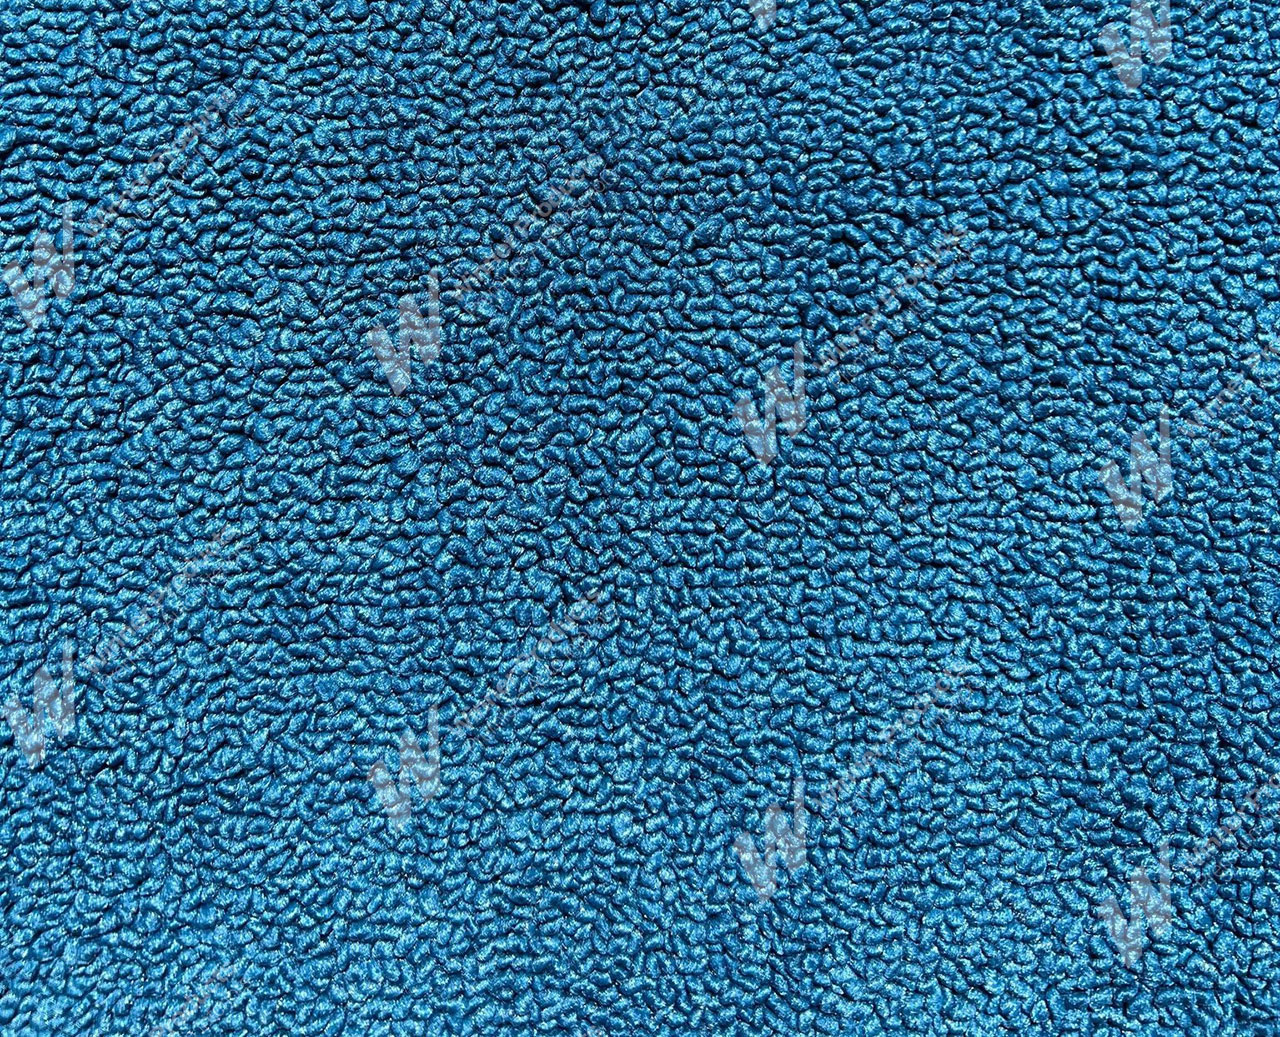 Holden Premier HT Premier Sedan 14R Twilight Blue Carpet (Image 1 of 1)